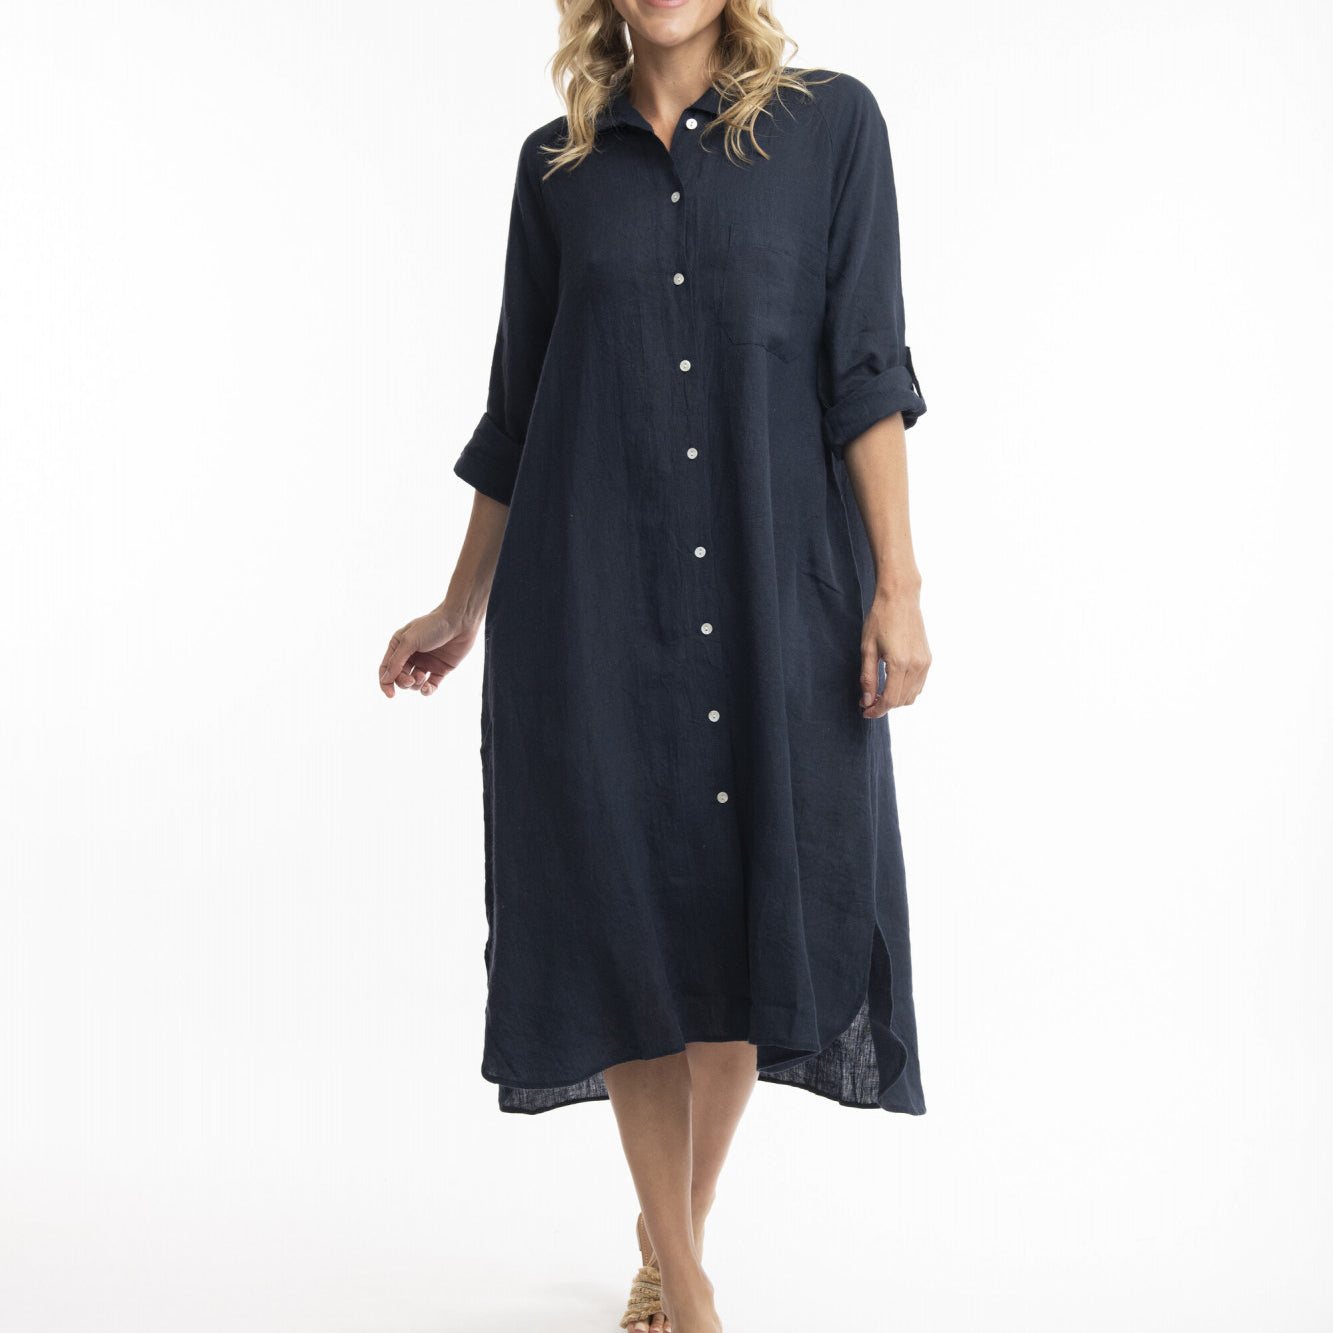 Orientique Australia 71456 Linen Shirt Dress